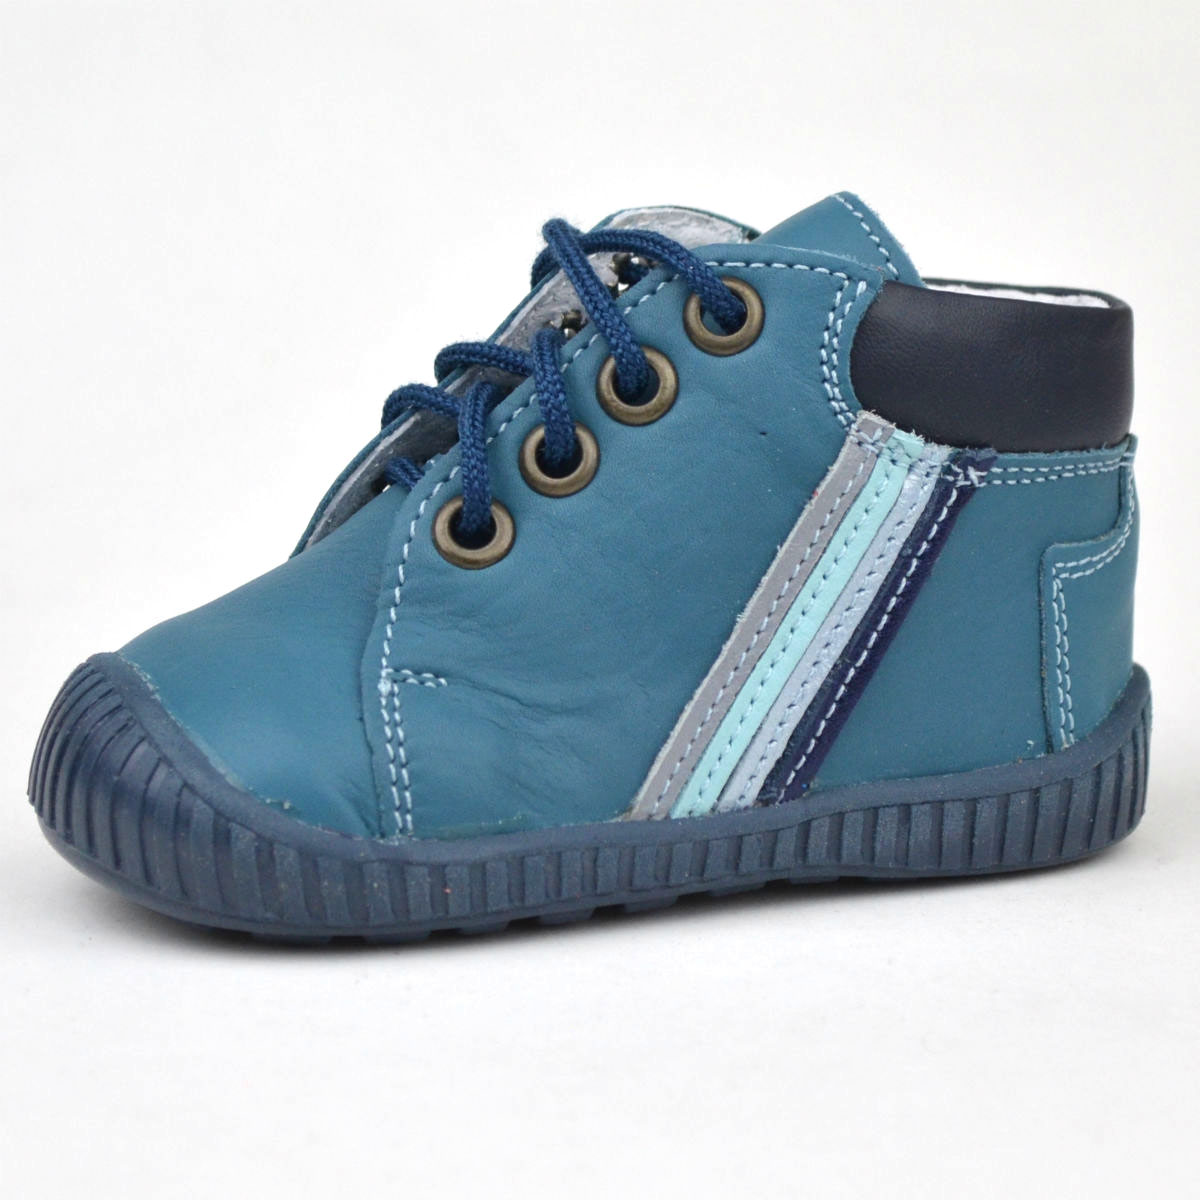 Maus fűzős első lépés cipő fiús kék színben, színes csíkkal az oldalán